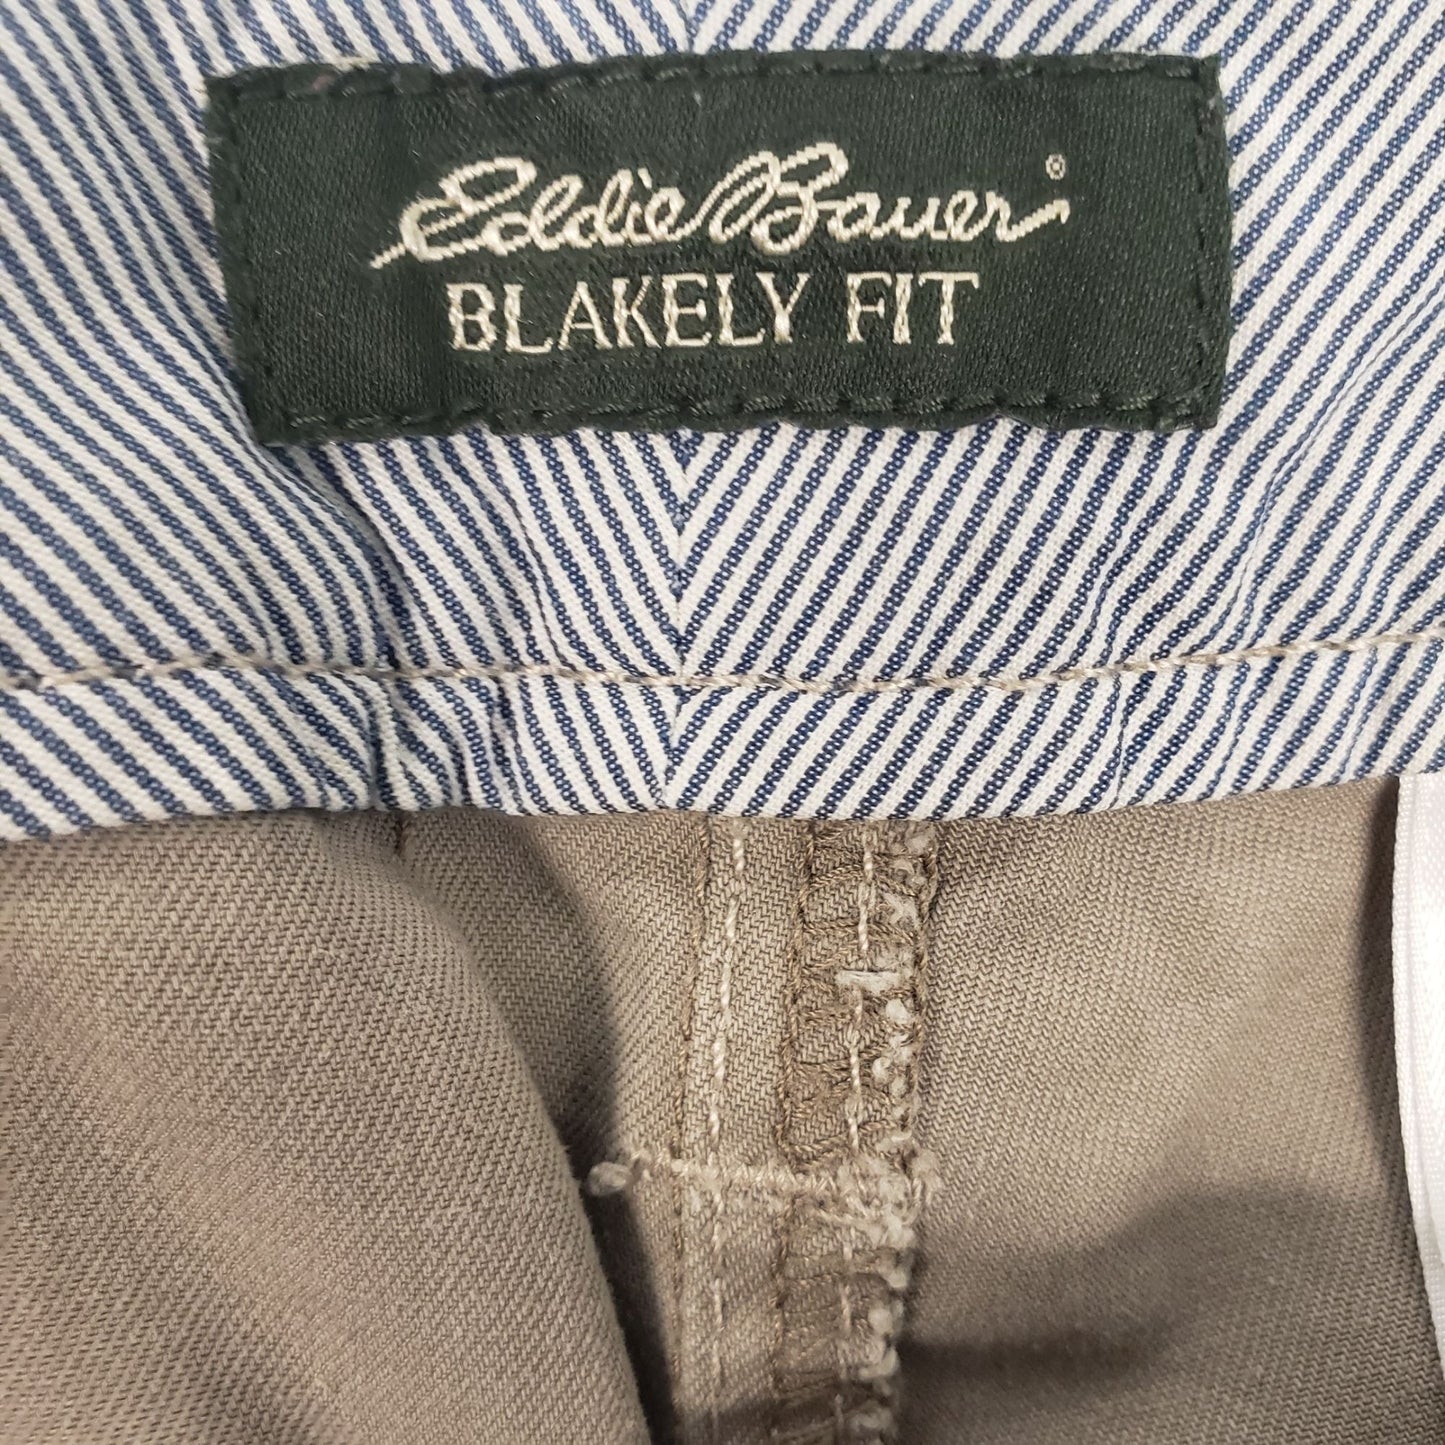 Eddie Bauer Blakely Fit Chino Shorts